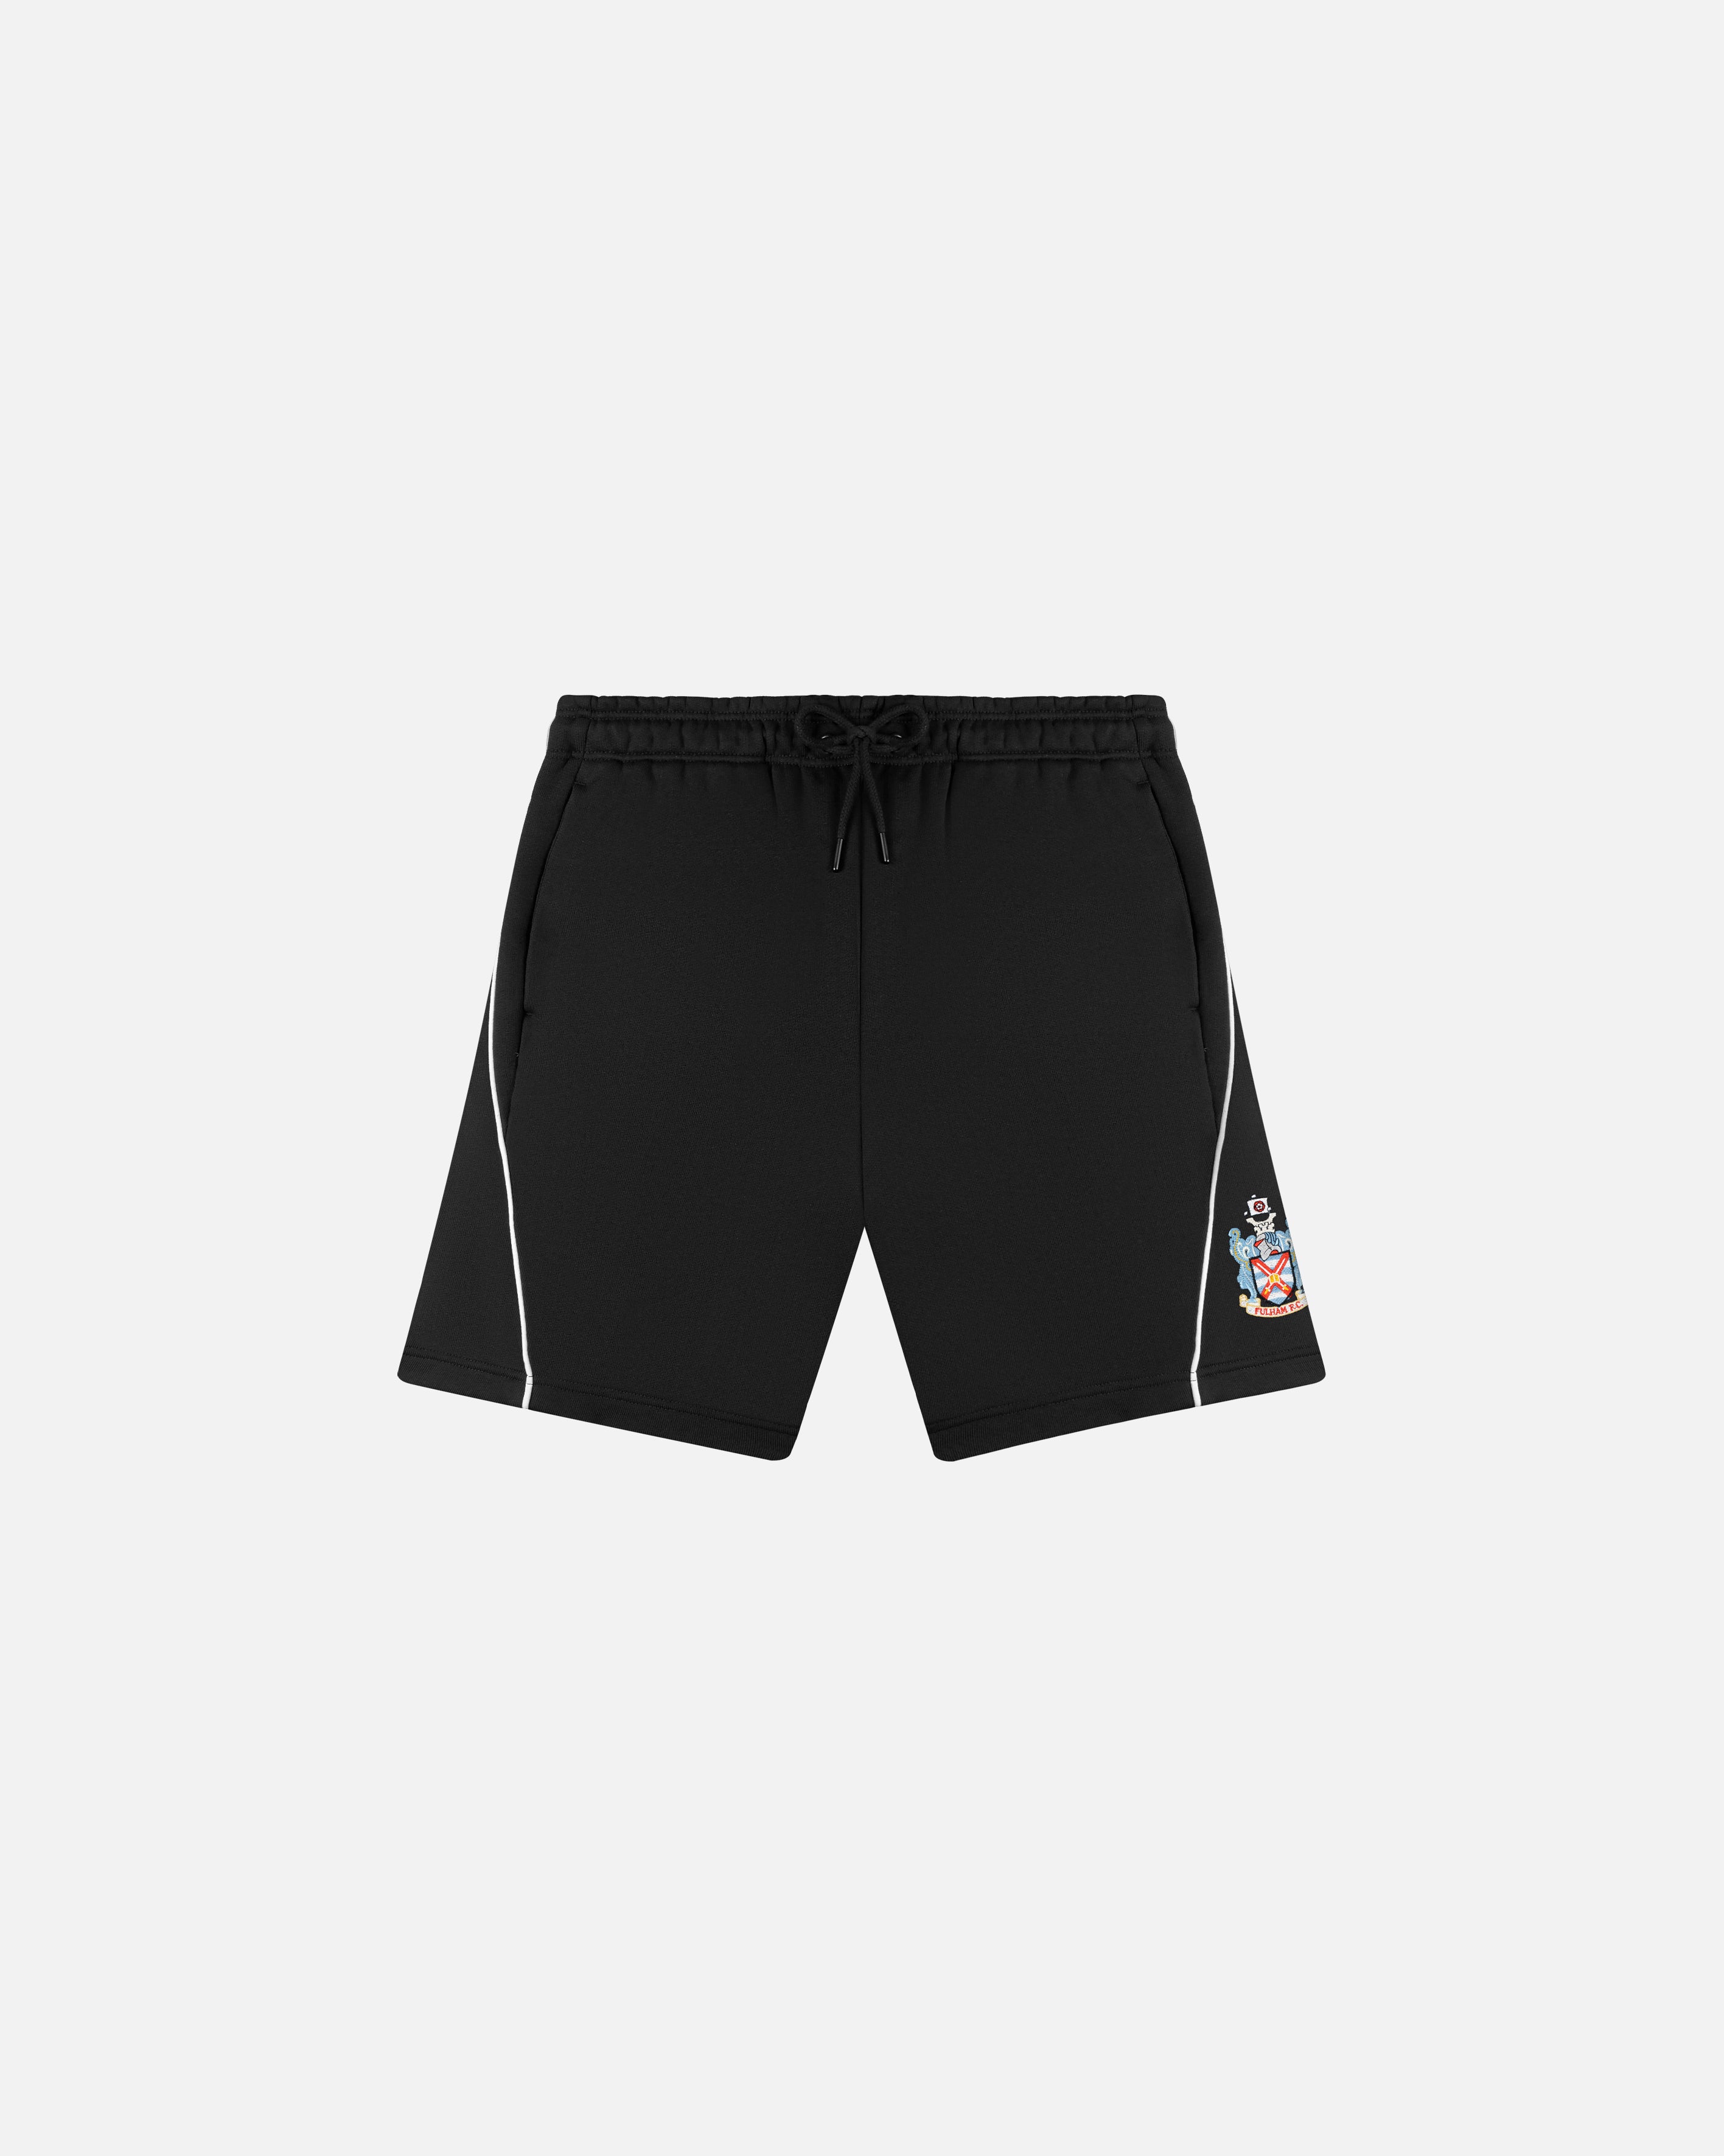 Fulham Panelled Shorts